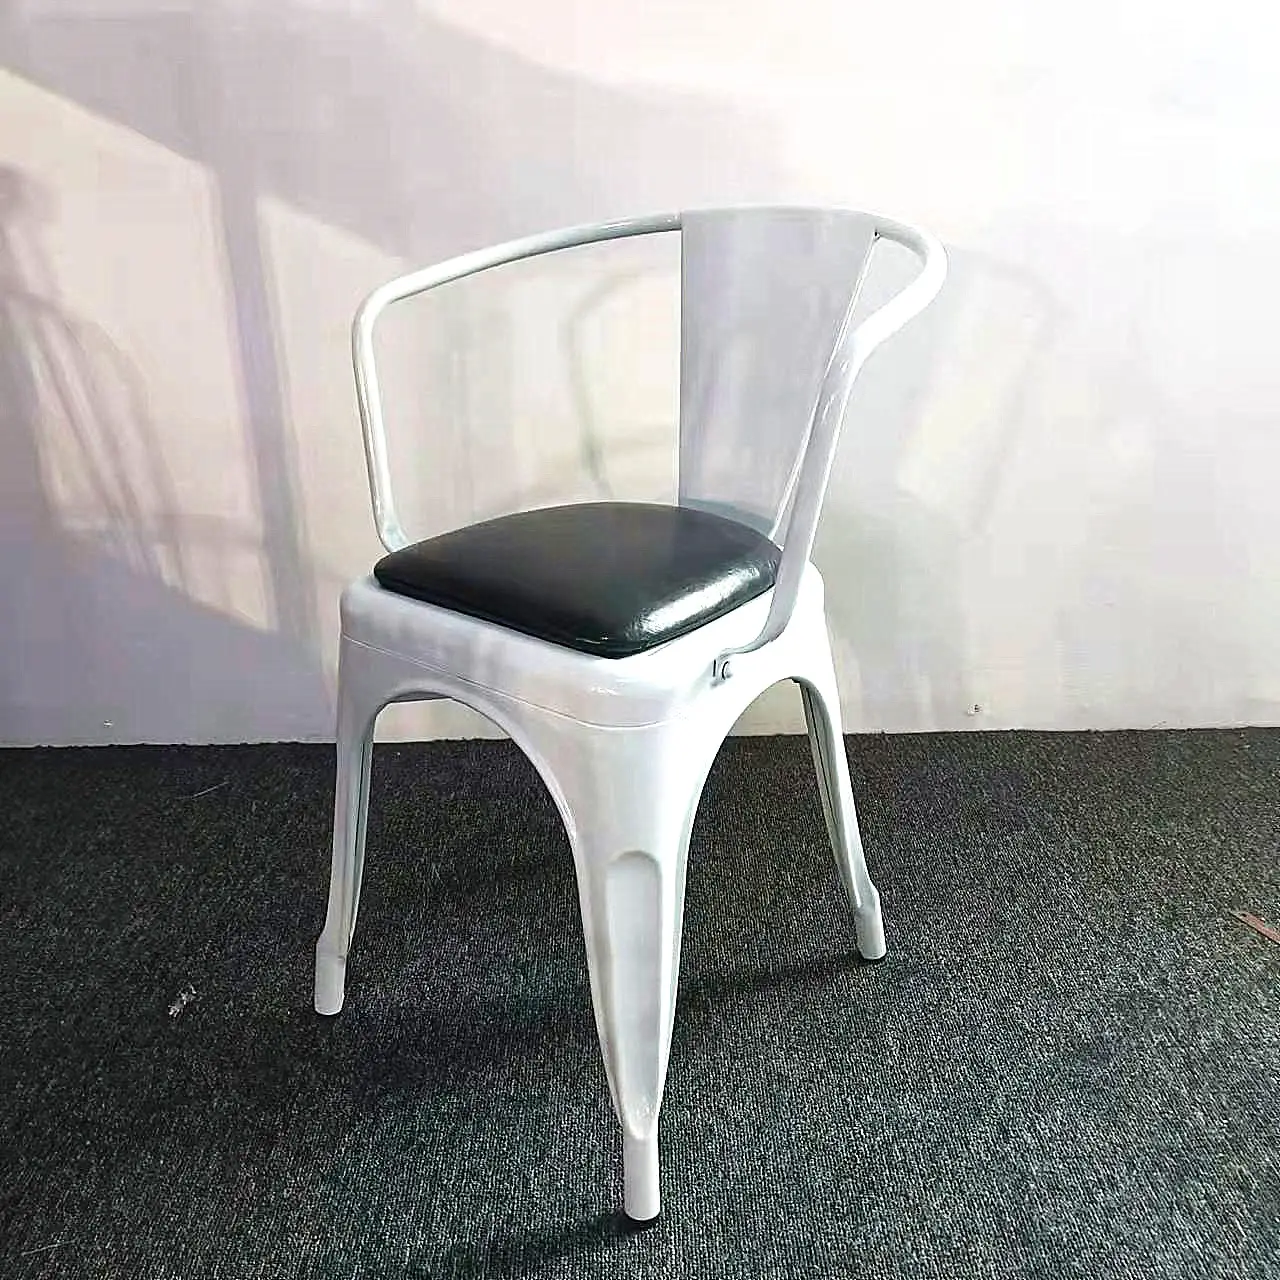 Лидер продаж, дешевая винтажная мебель, железные металлические обеденные стулья для кофе с диванной подушкой